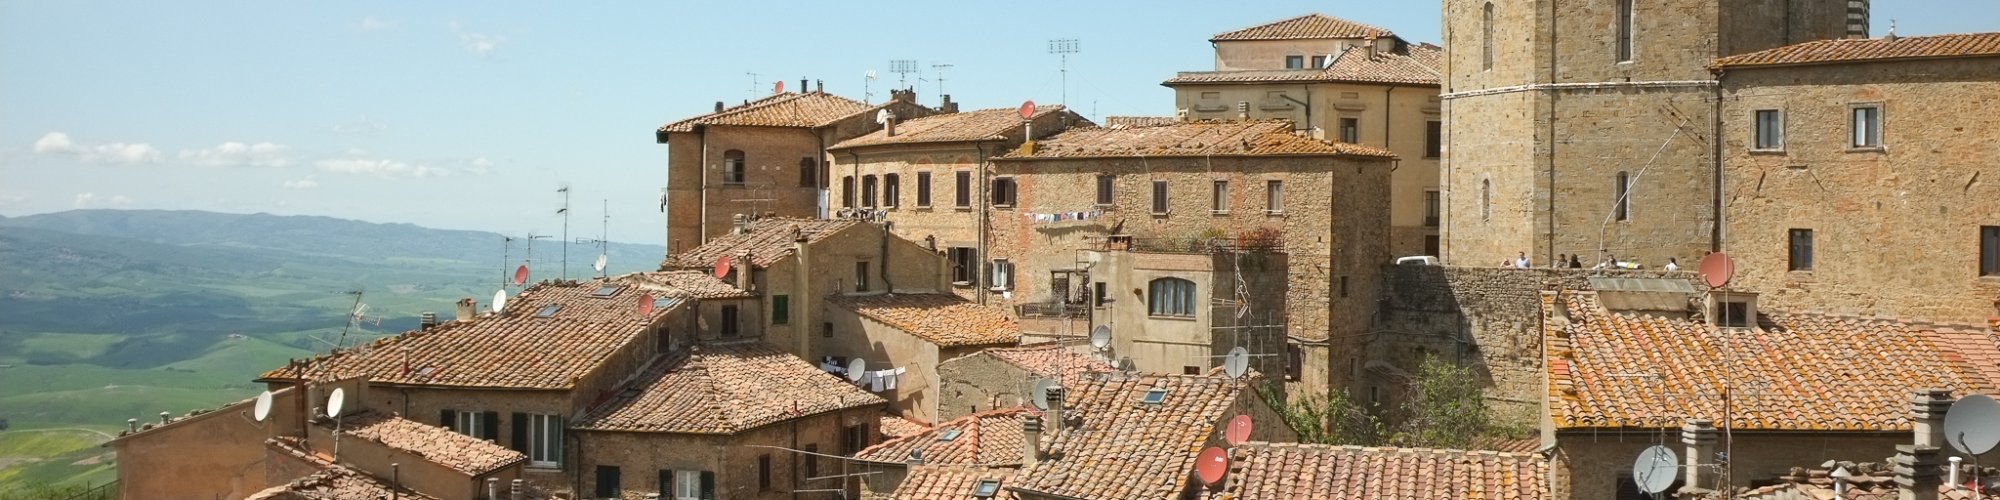 Volterra rooftops